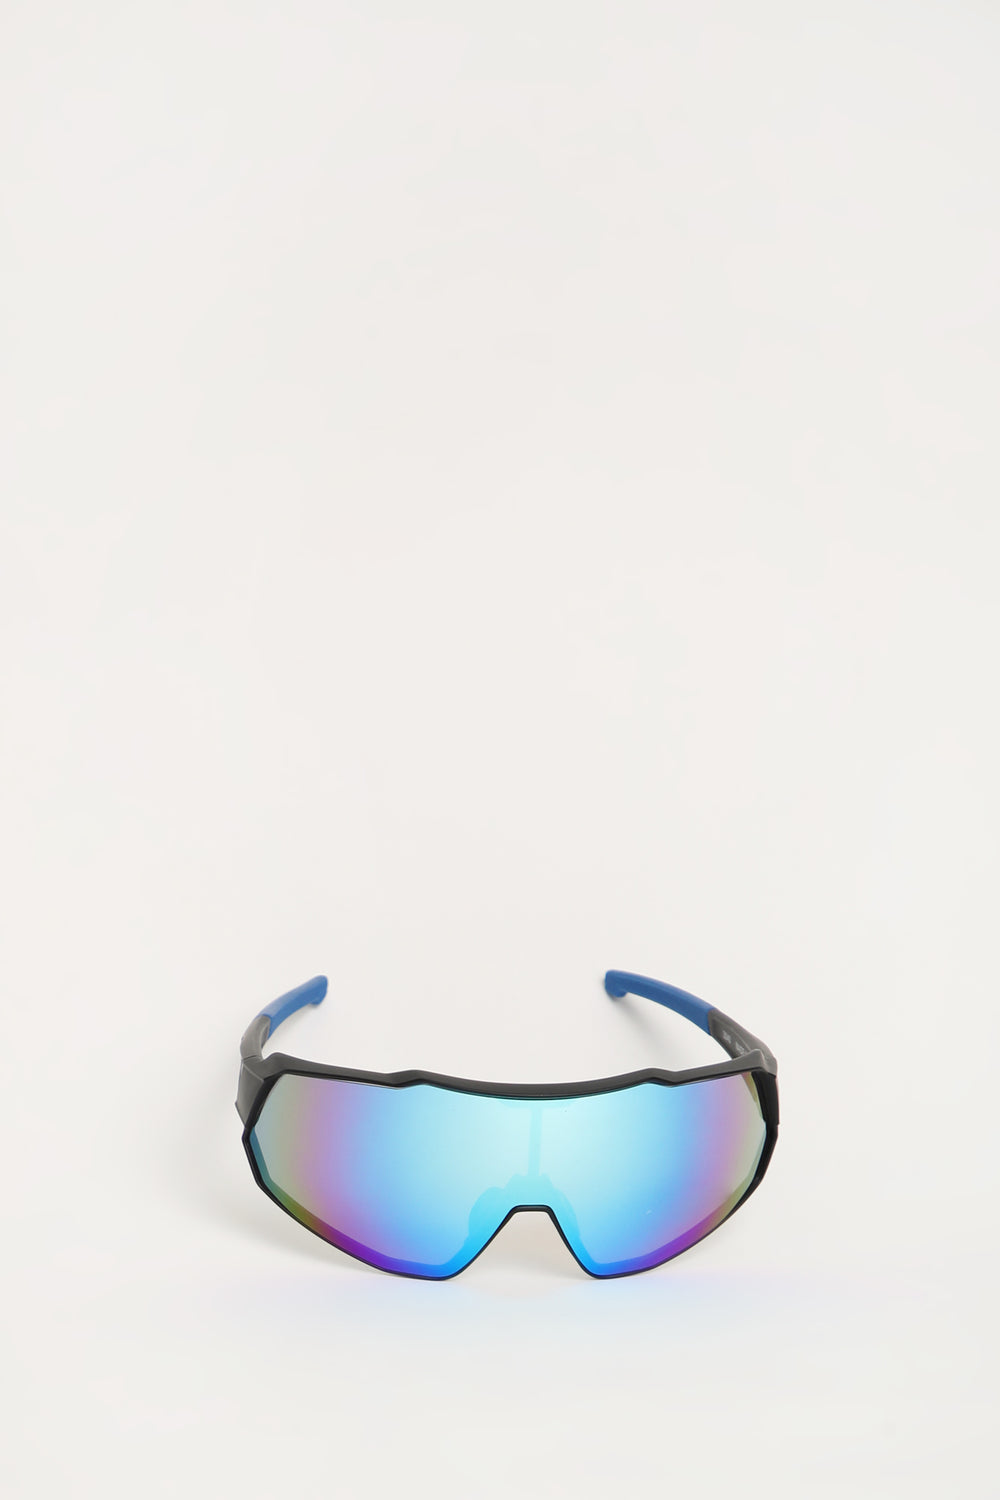 West49 Shield Sunglasses West49 Shield Sunglasses